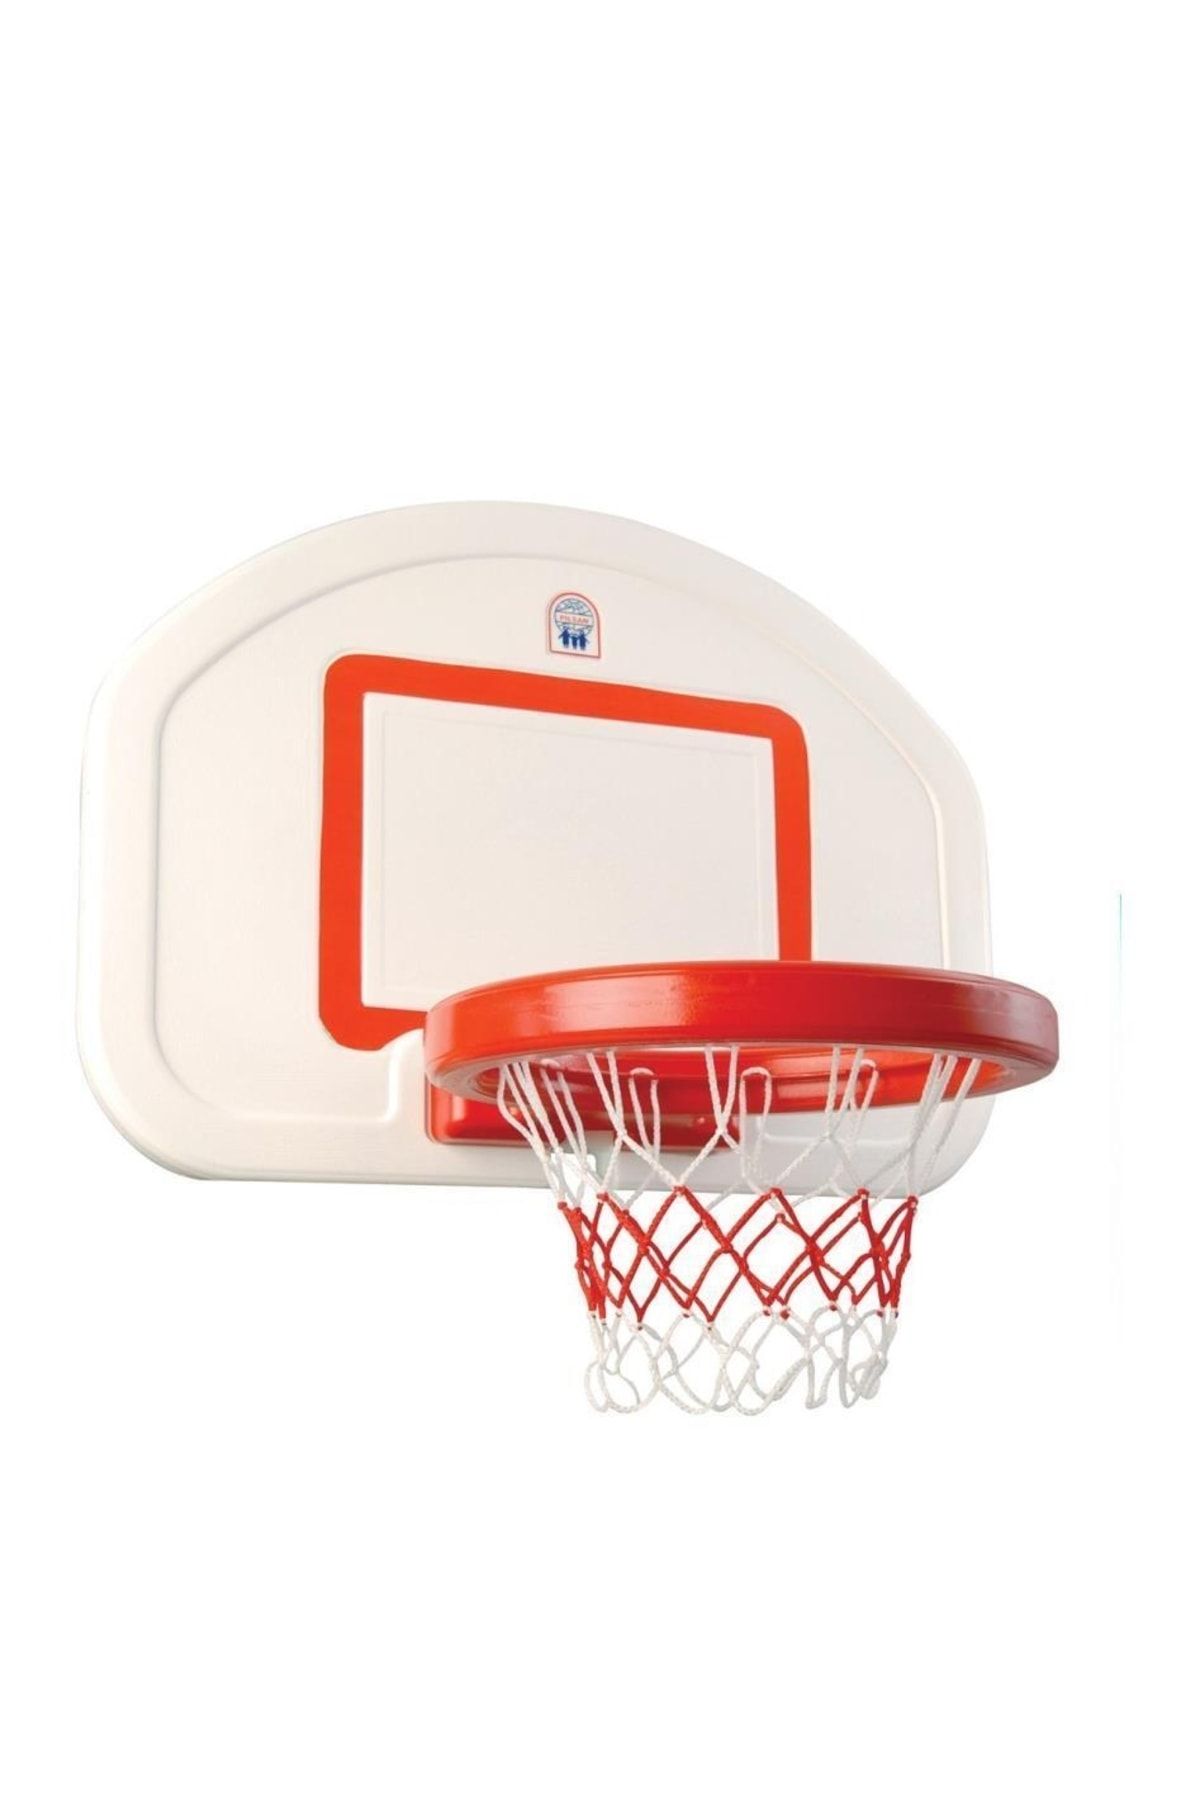 PİLSAN Profesyonel Basketbol Potası - Askılı